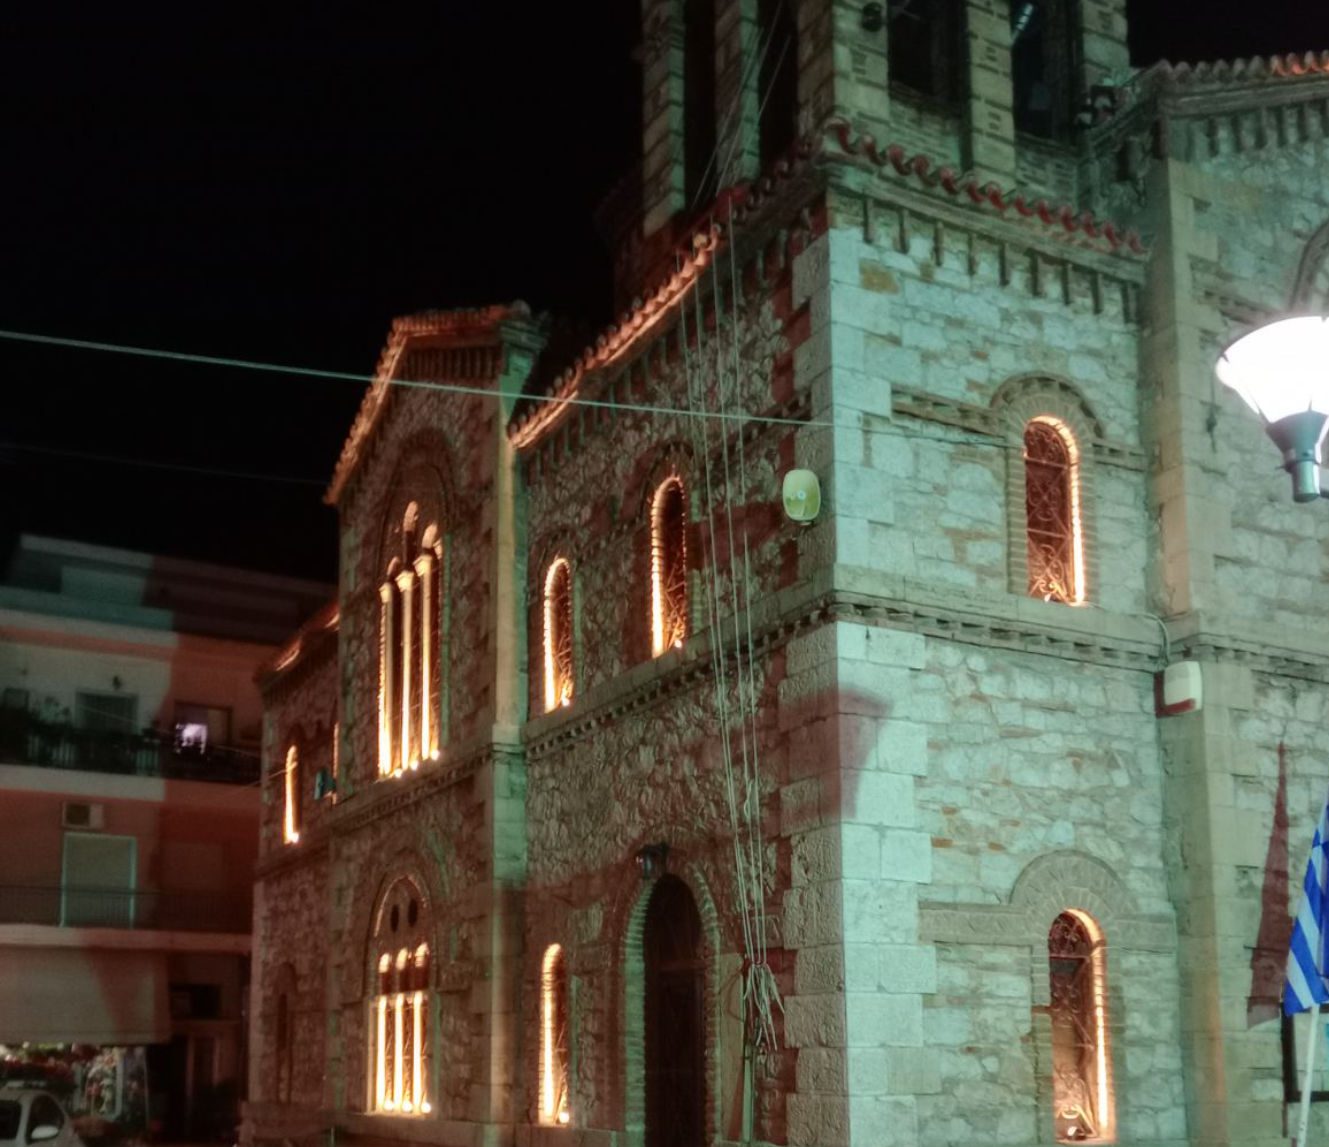 Εύβοια: Ποιος Ιερός Ναός φωταγωγήθηκε σε κεντρική πλατεία